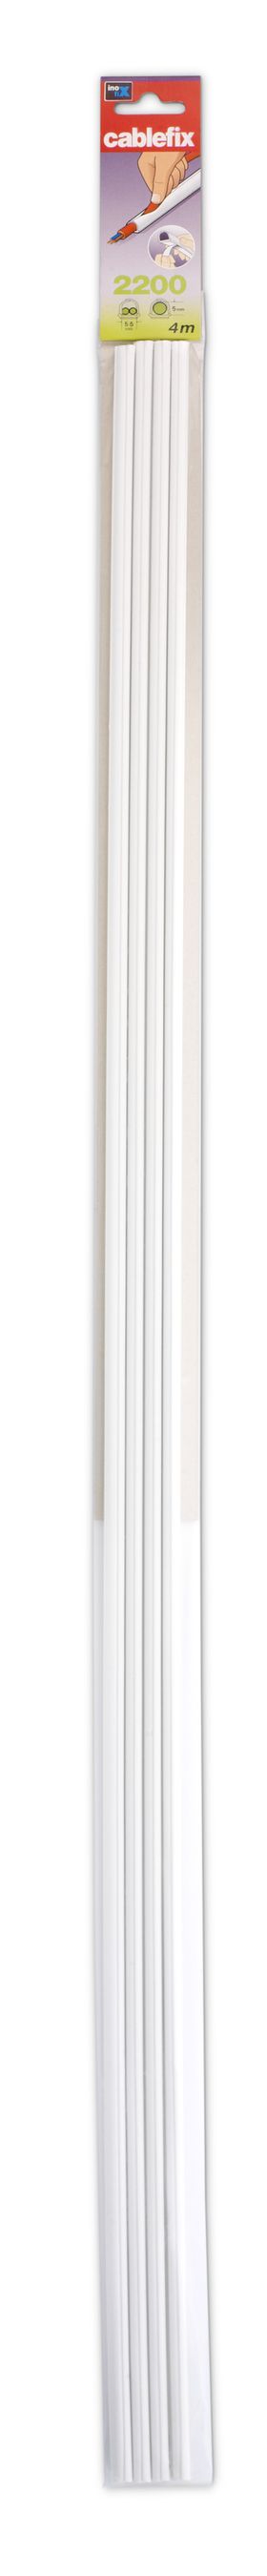 Goulotte 5mm blanc auto-adhésif 1m 4 pcs.